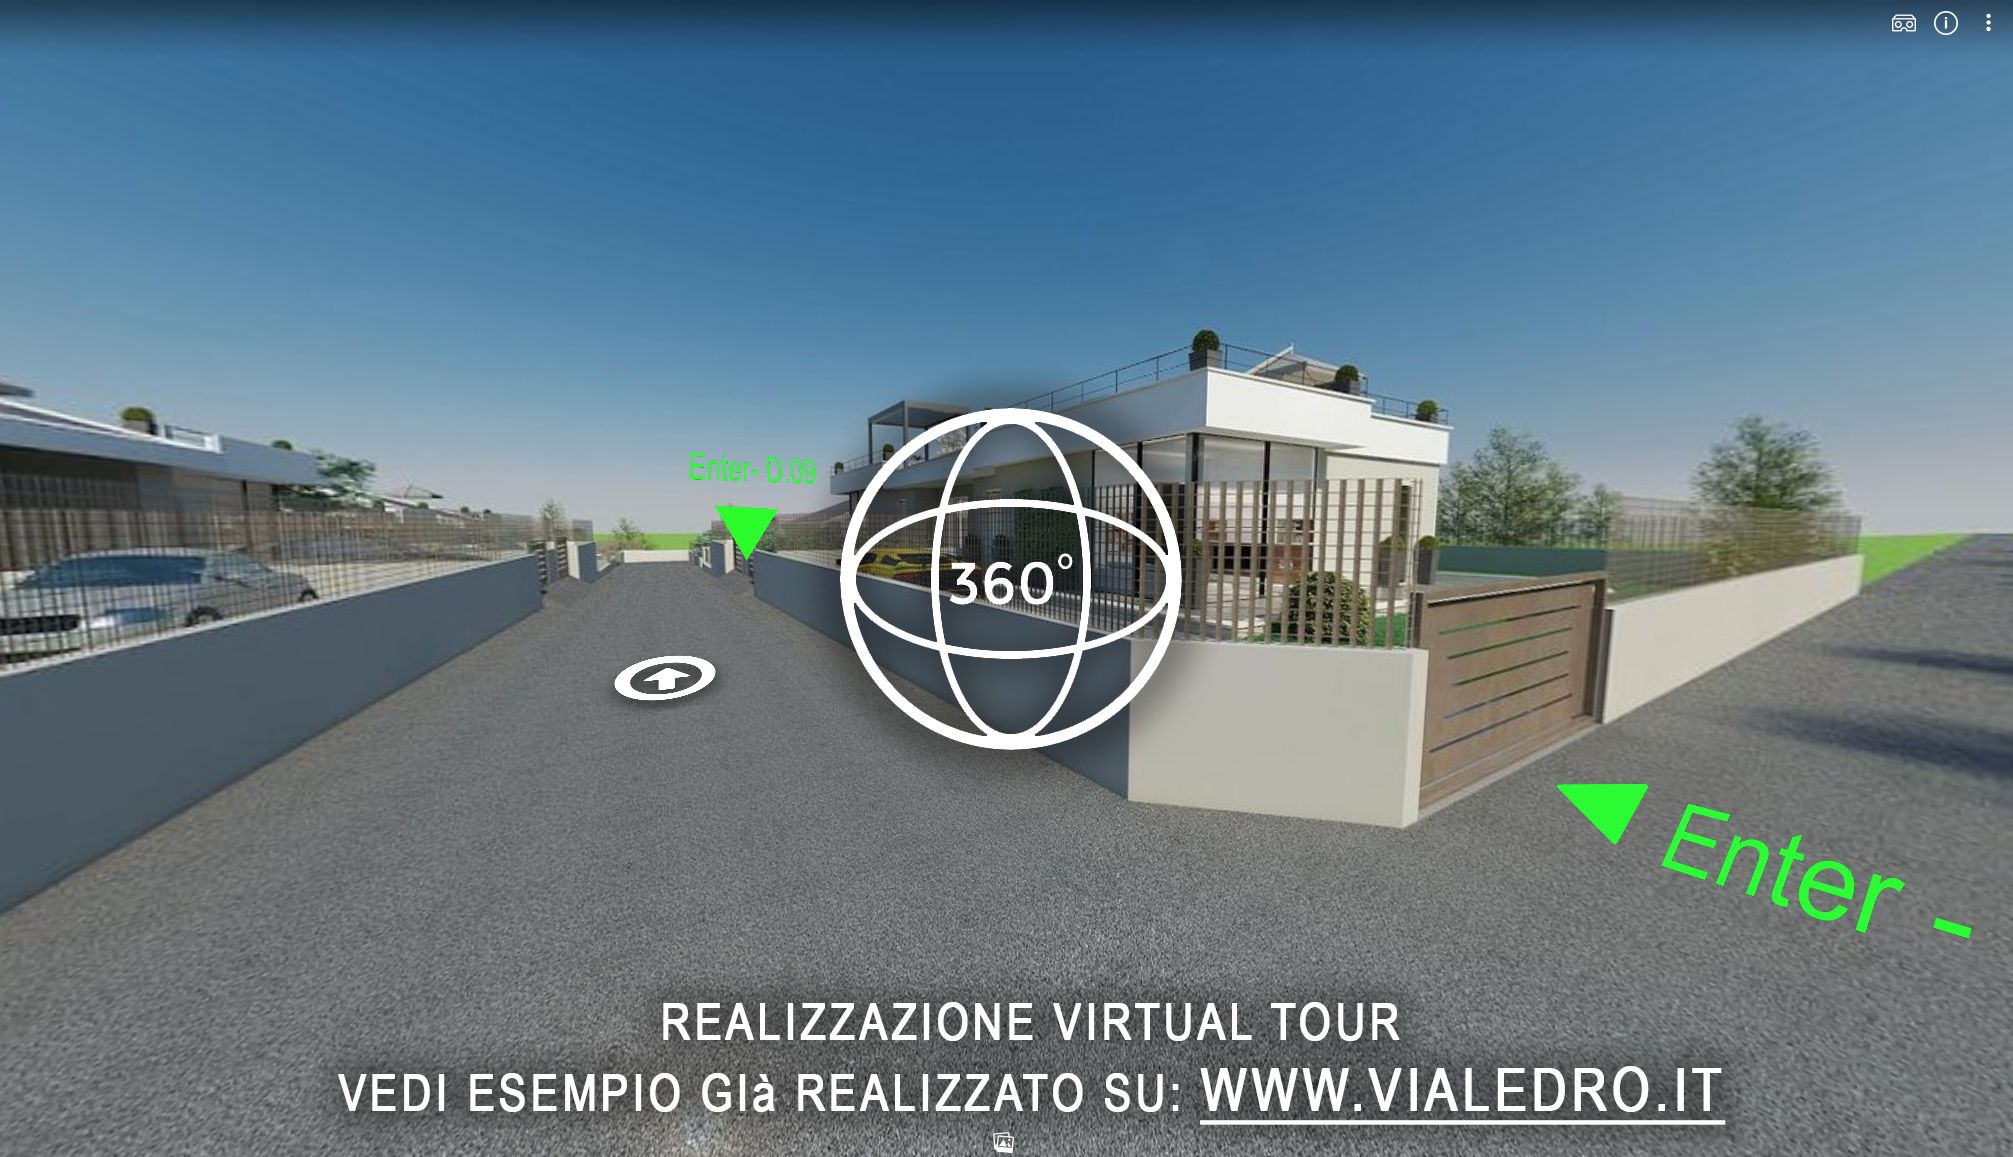 Realizzo virtual tour 360°